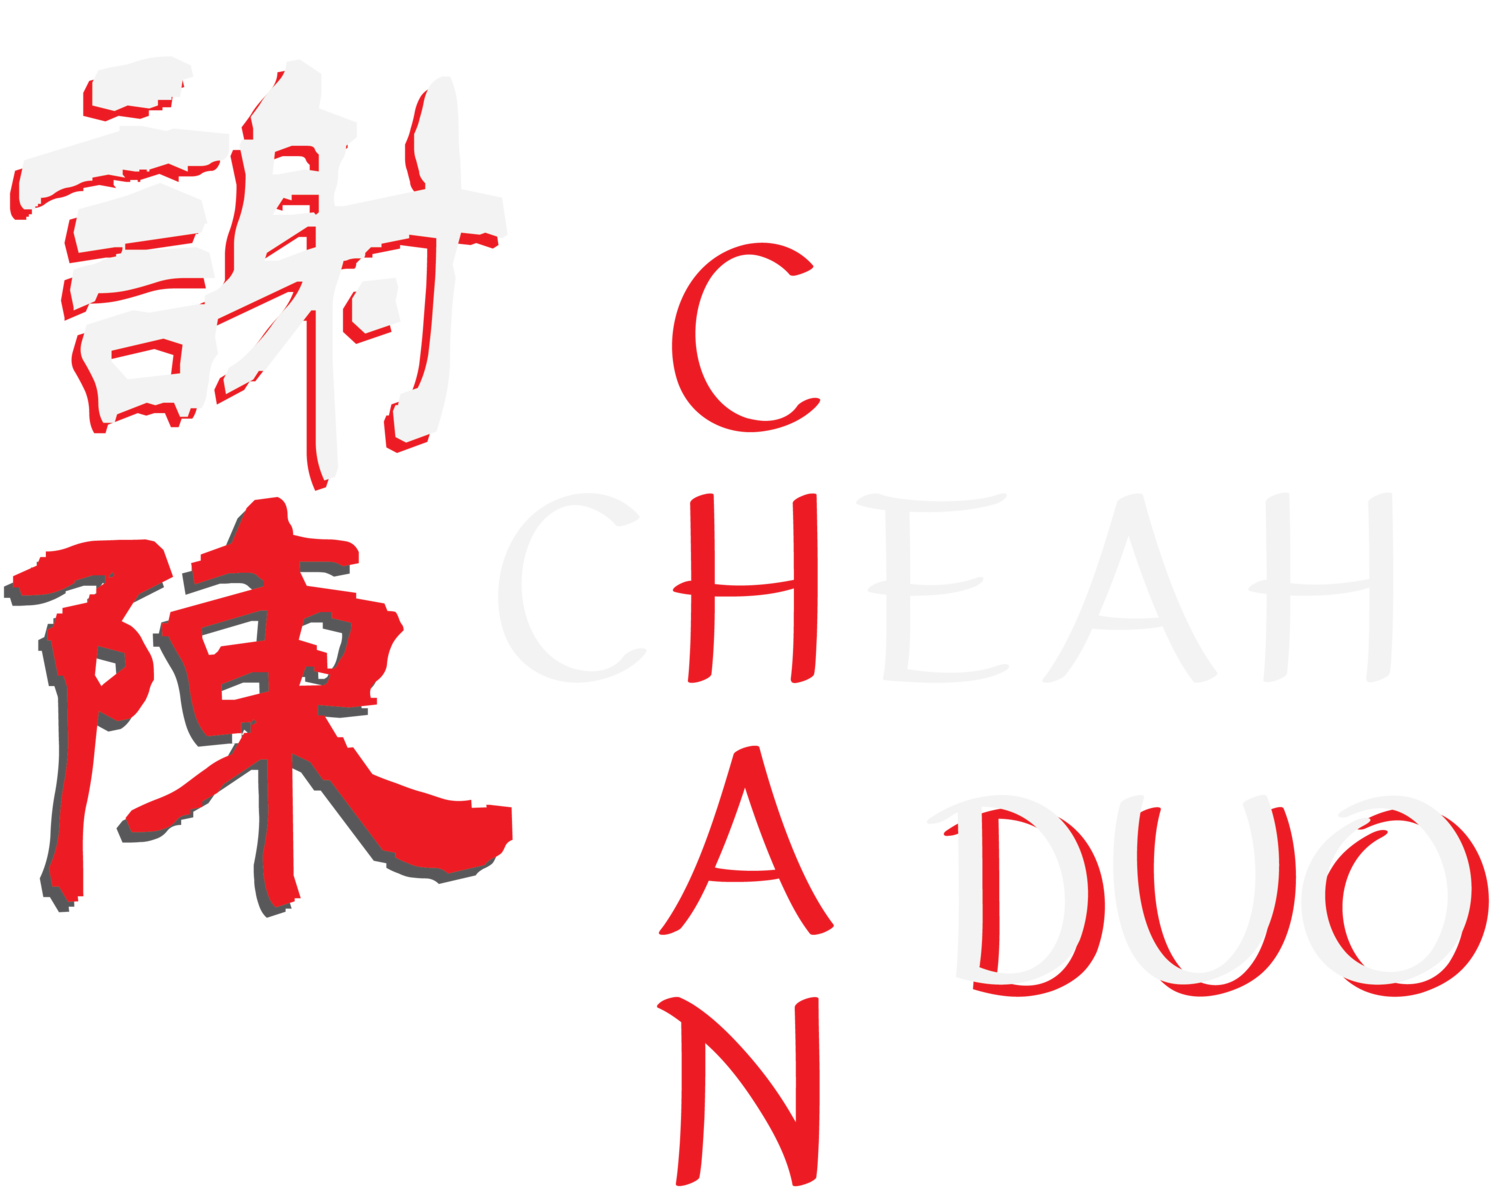 Cheah Chan Duo